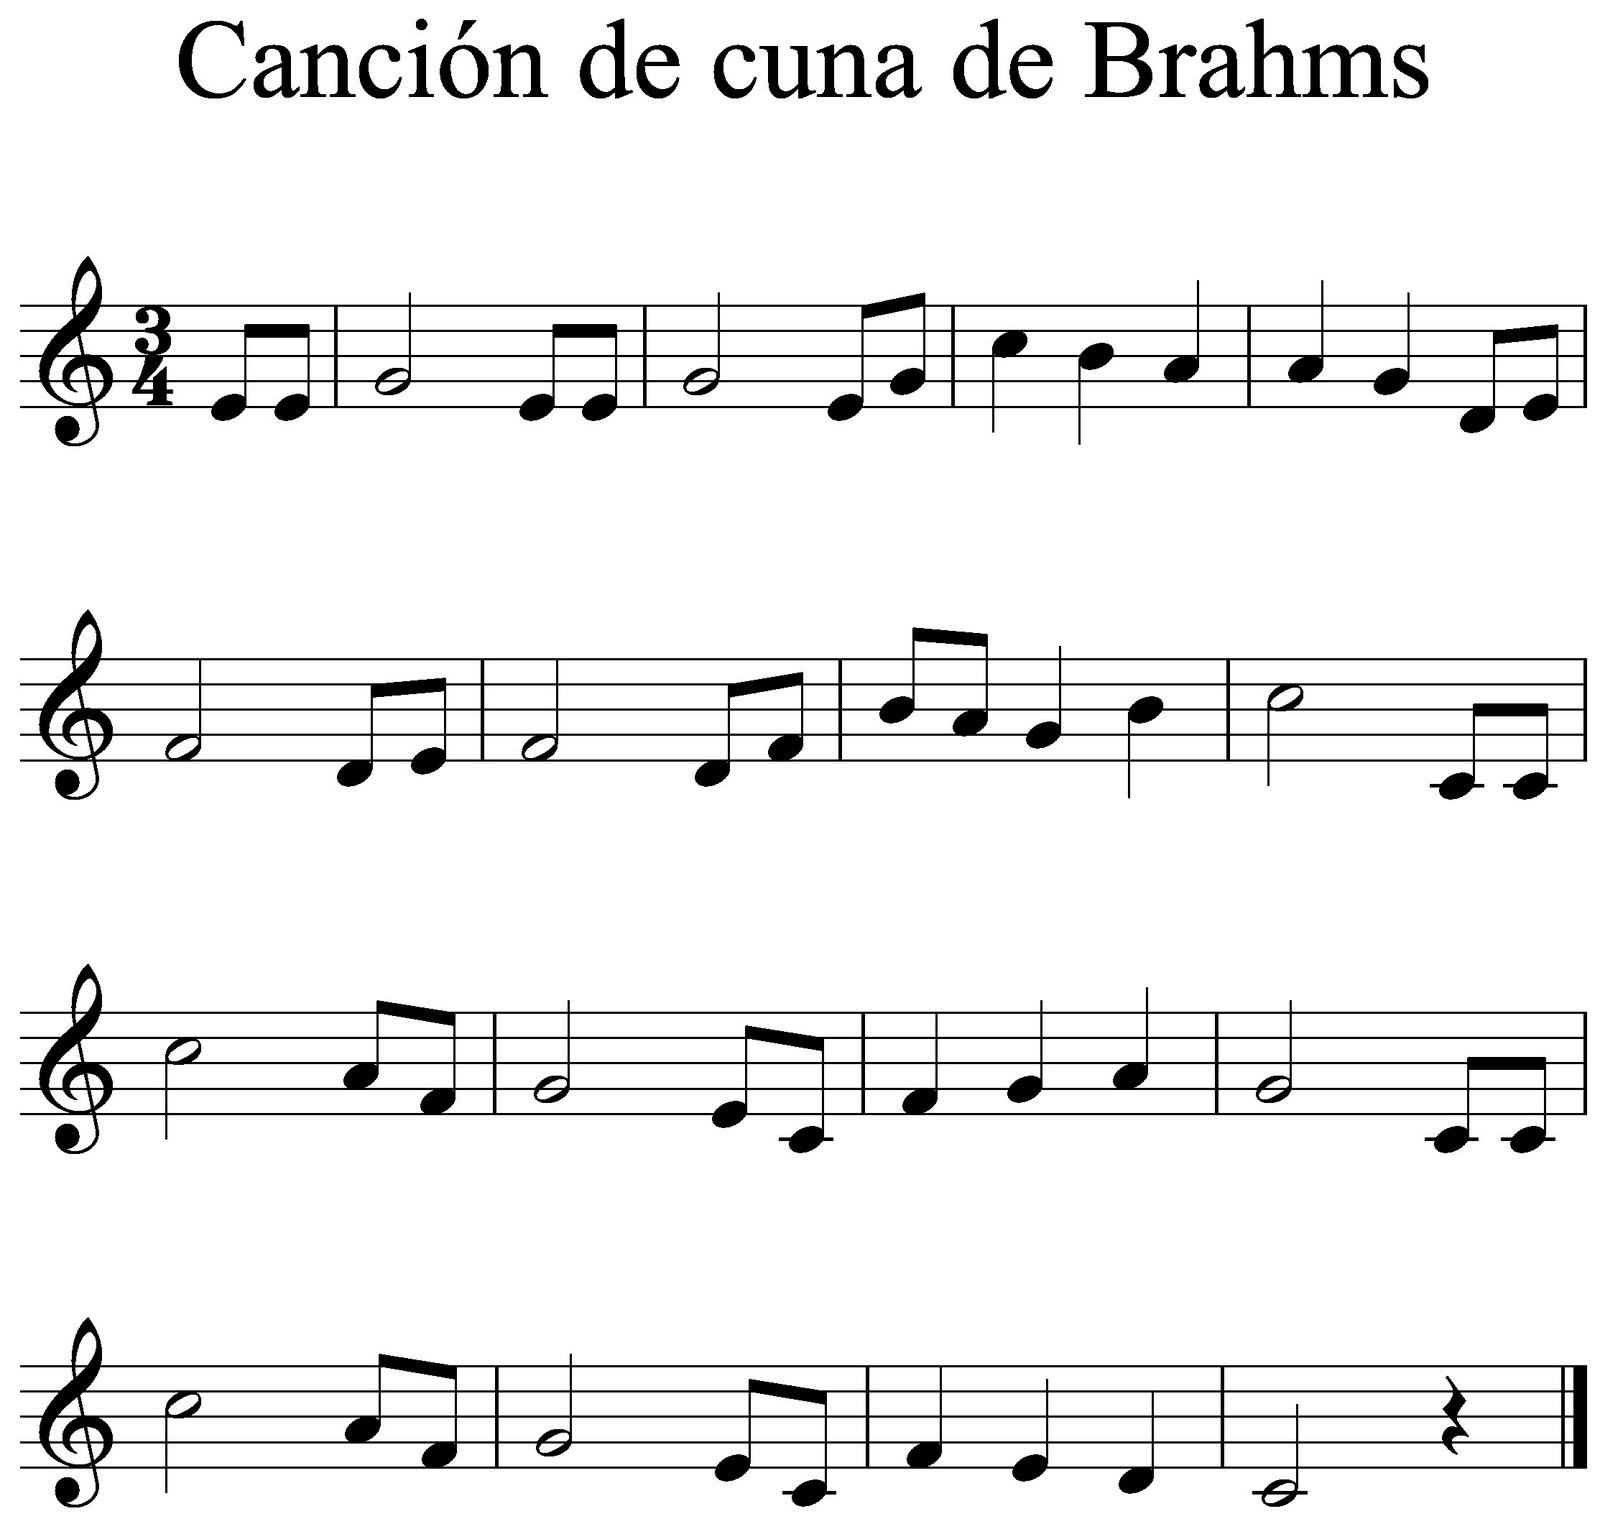 La clase de música: Canción de cuna Brahms